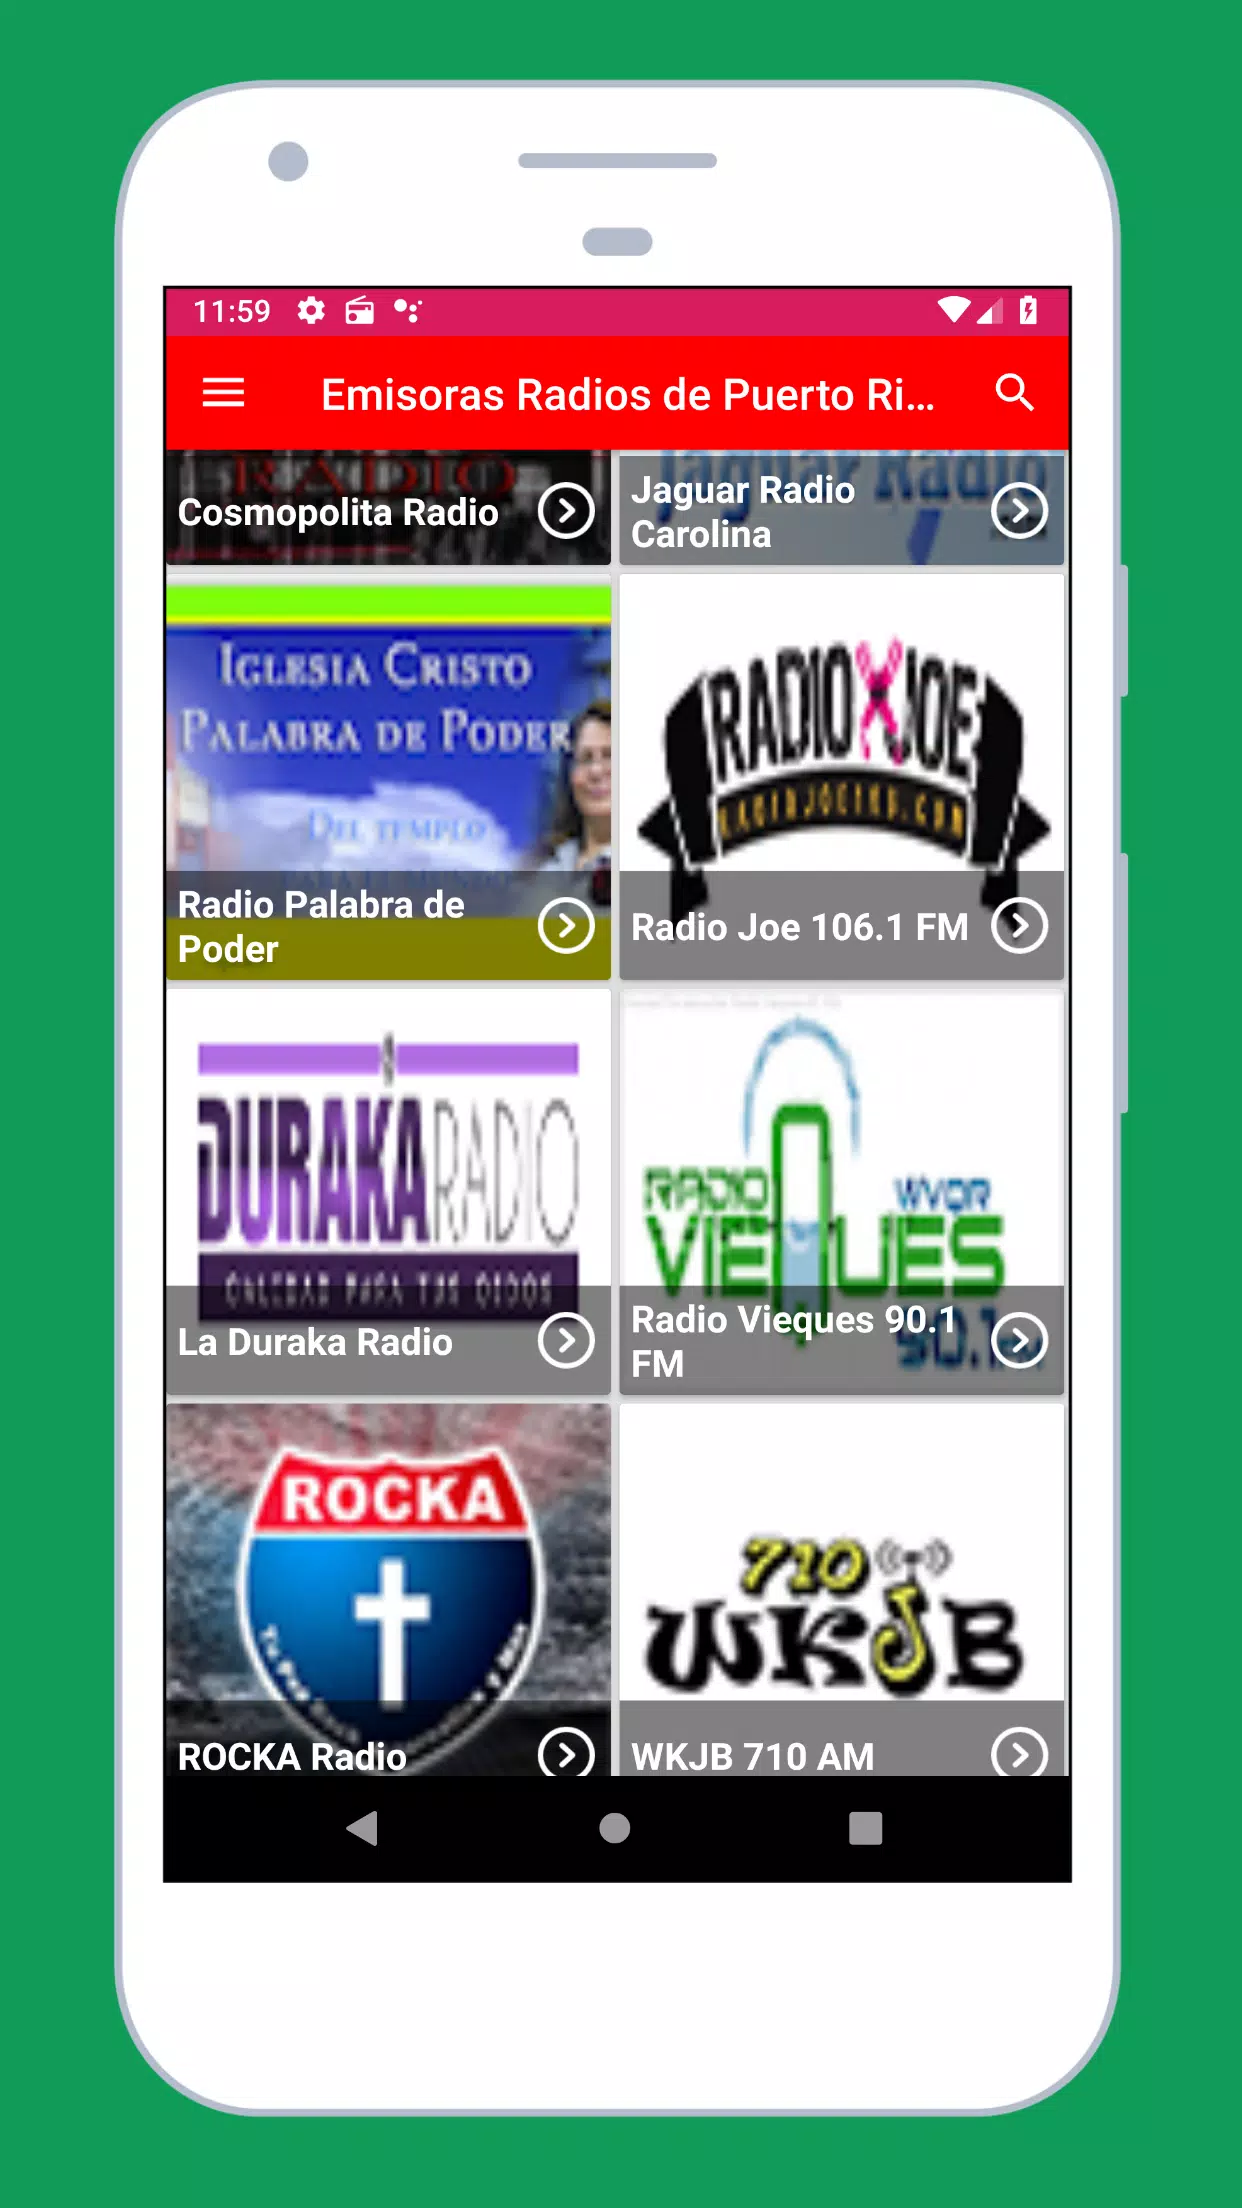 Emisoras Radios de Puerto Rico en Vivo Gratis FM y for Android - APK  Download